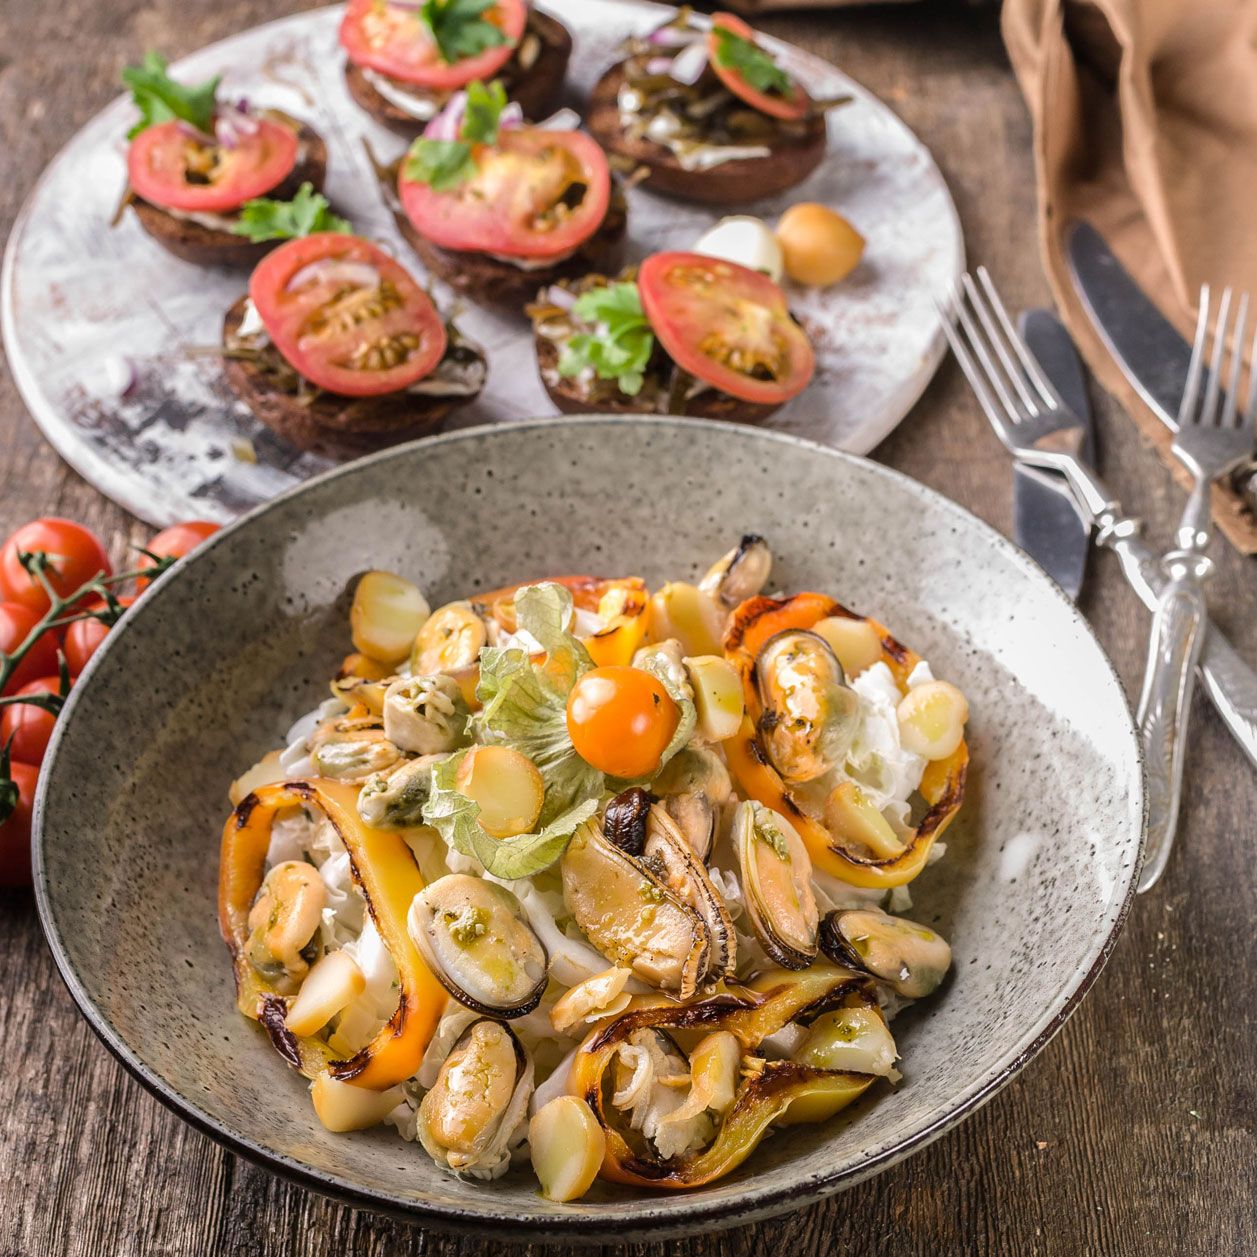 Mediterrane Ernährung: Salat mit Paprika, Muscheln und Feta